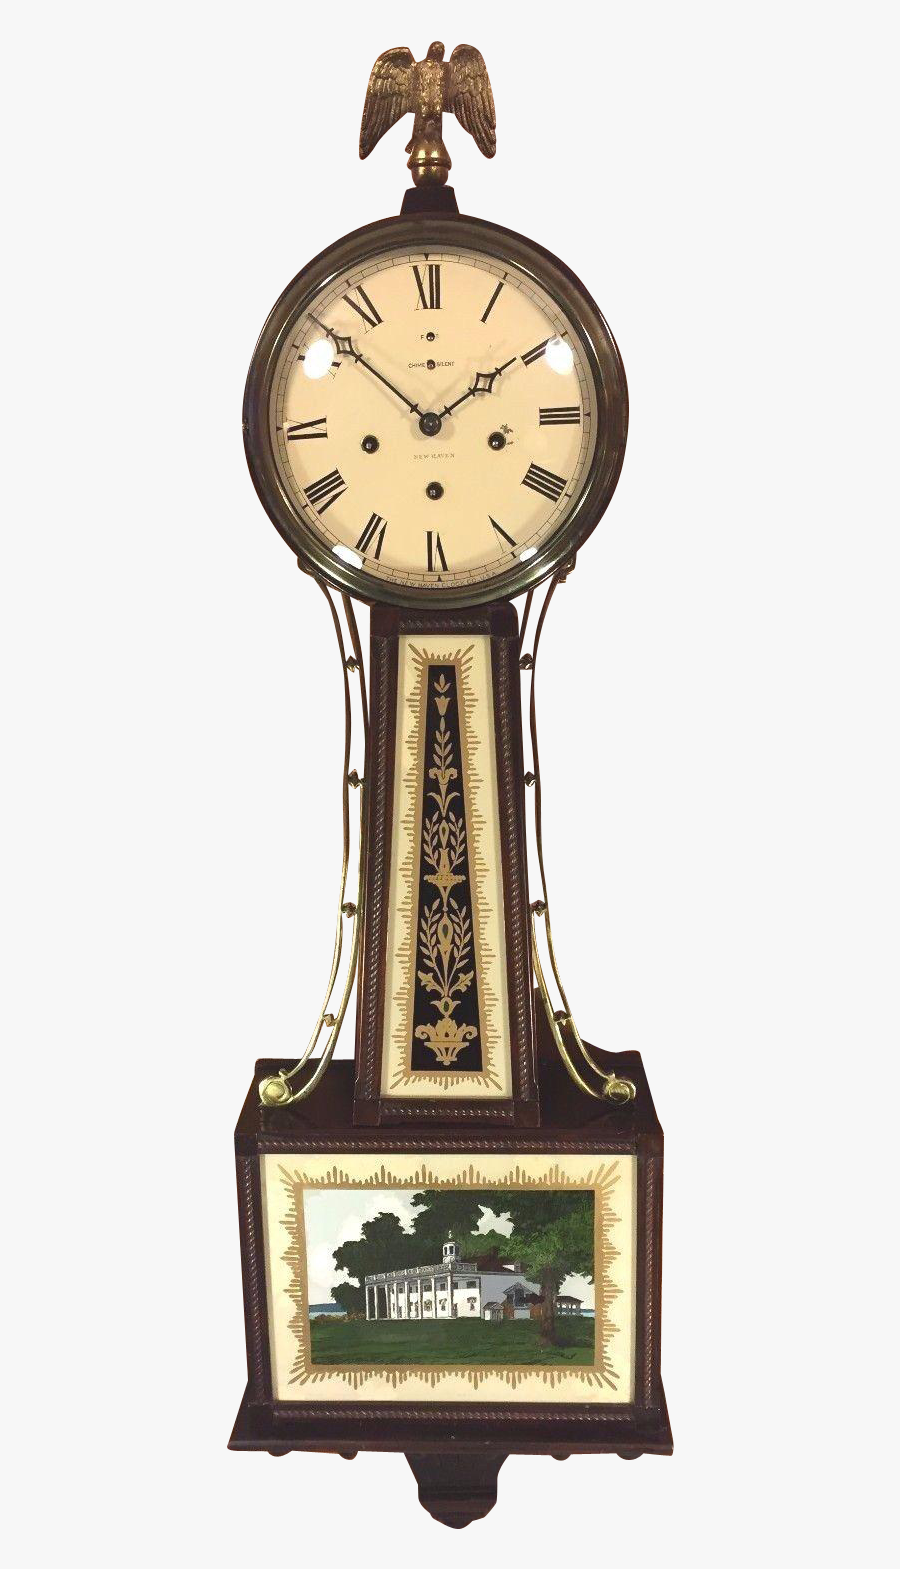 Banjo Clock Png Transparent Image - New Haven Westminster Chime Banjo Clock, Transparent Clipart